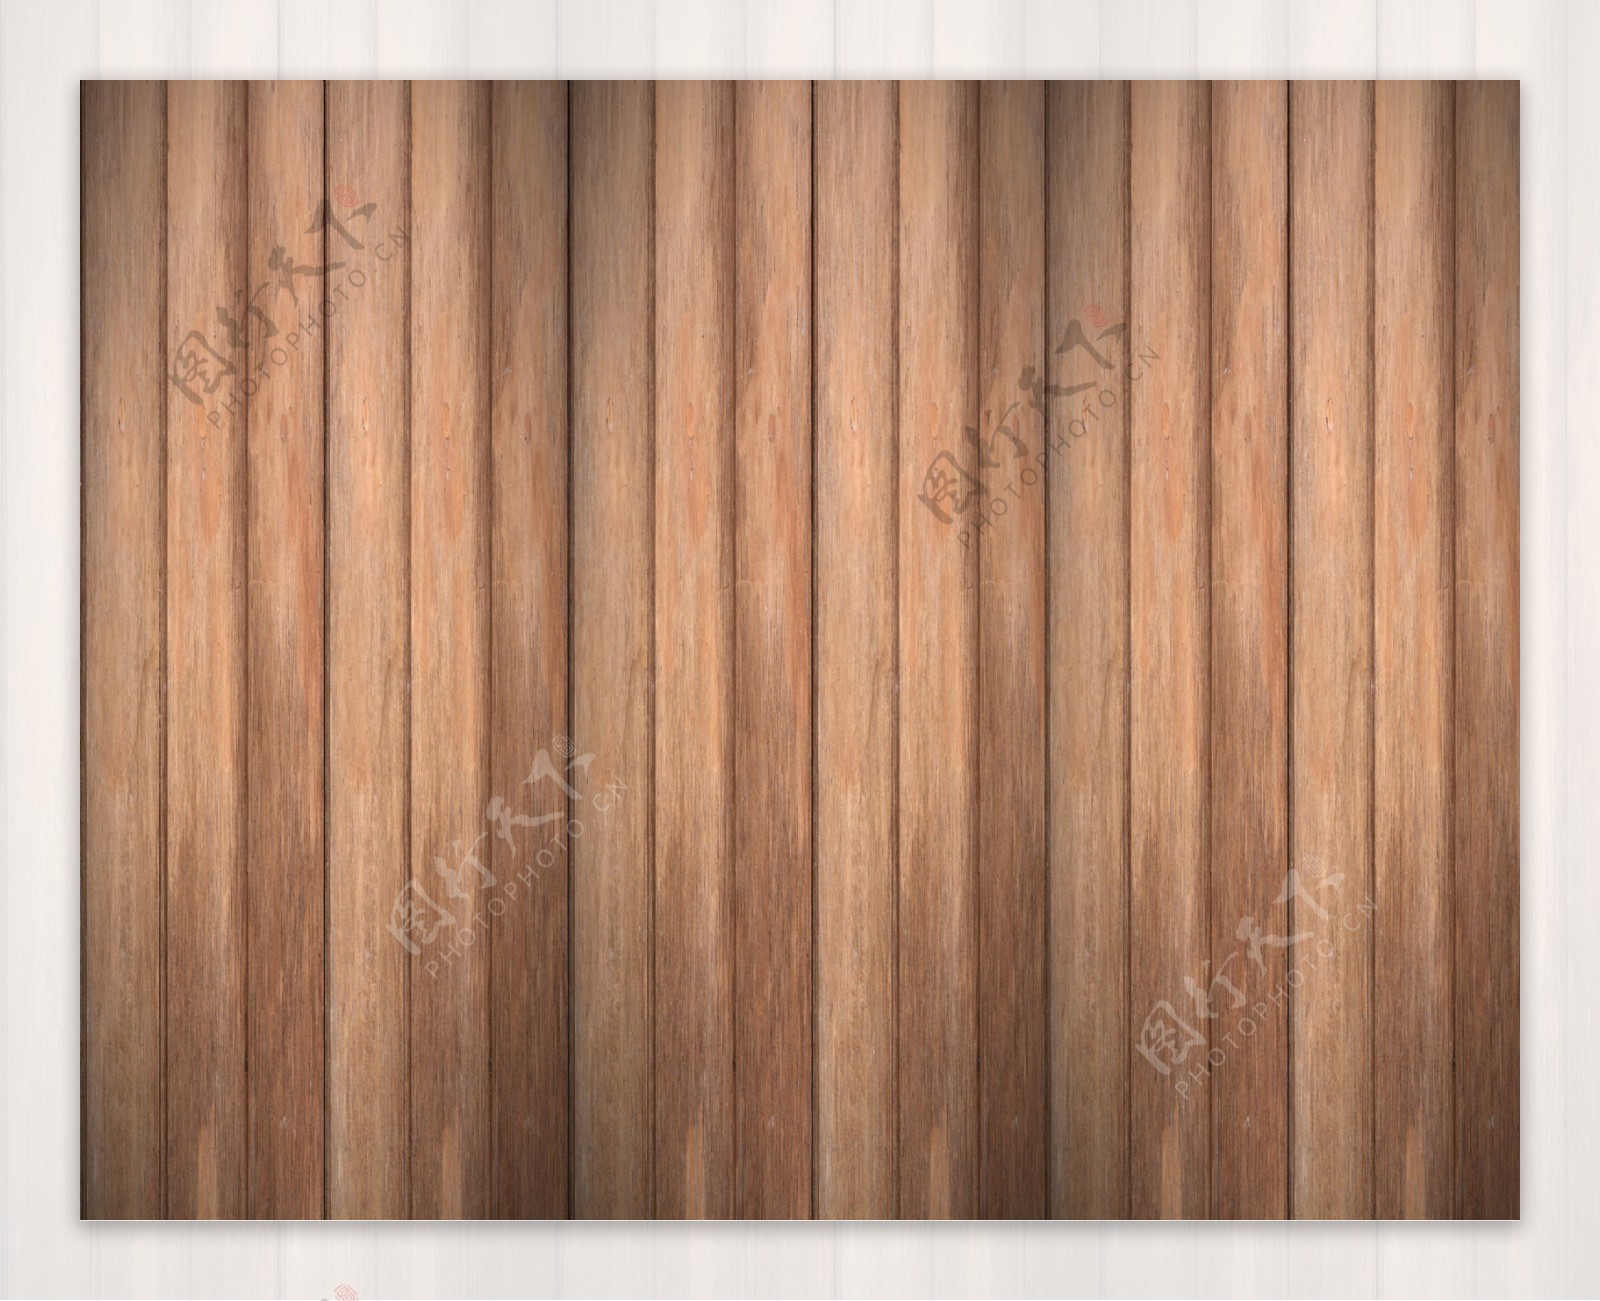 木板木纹背景